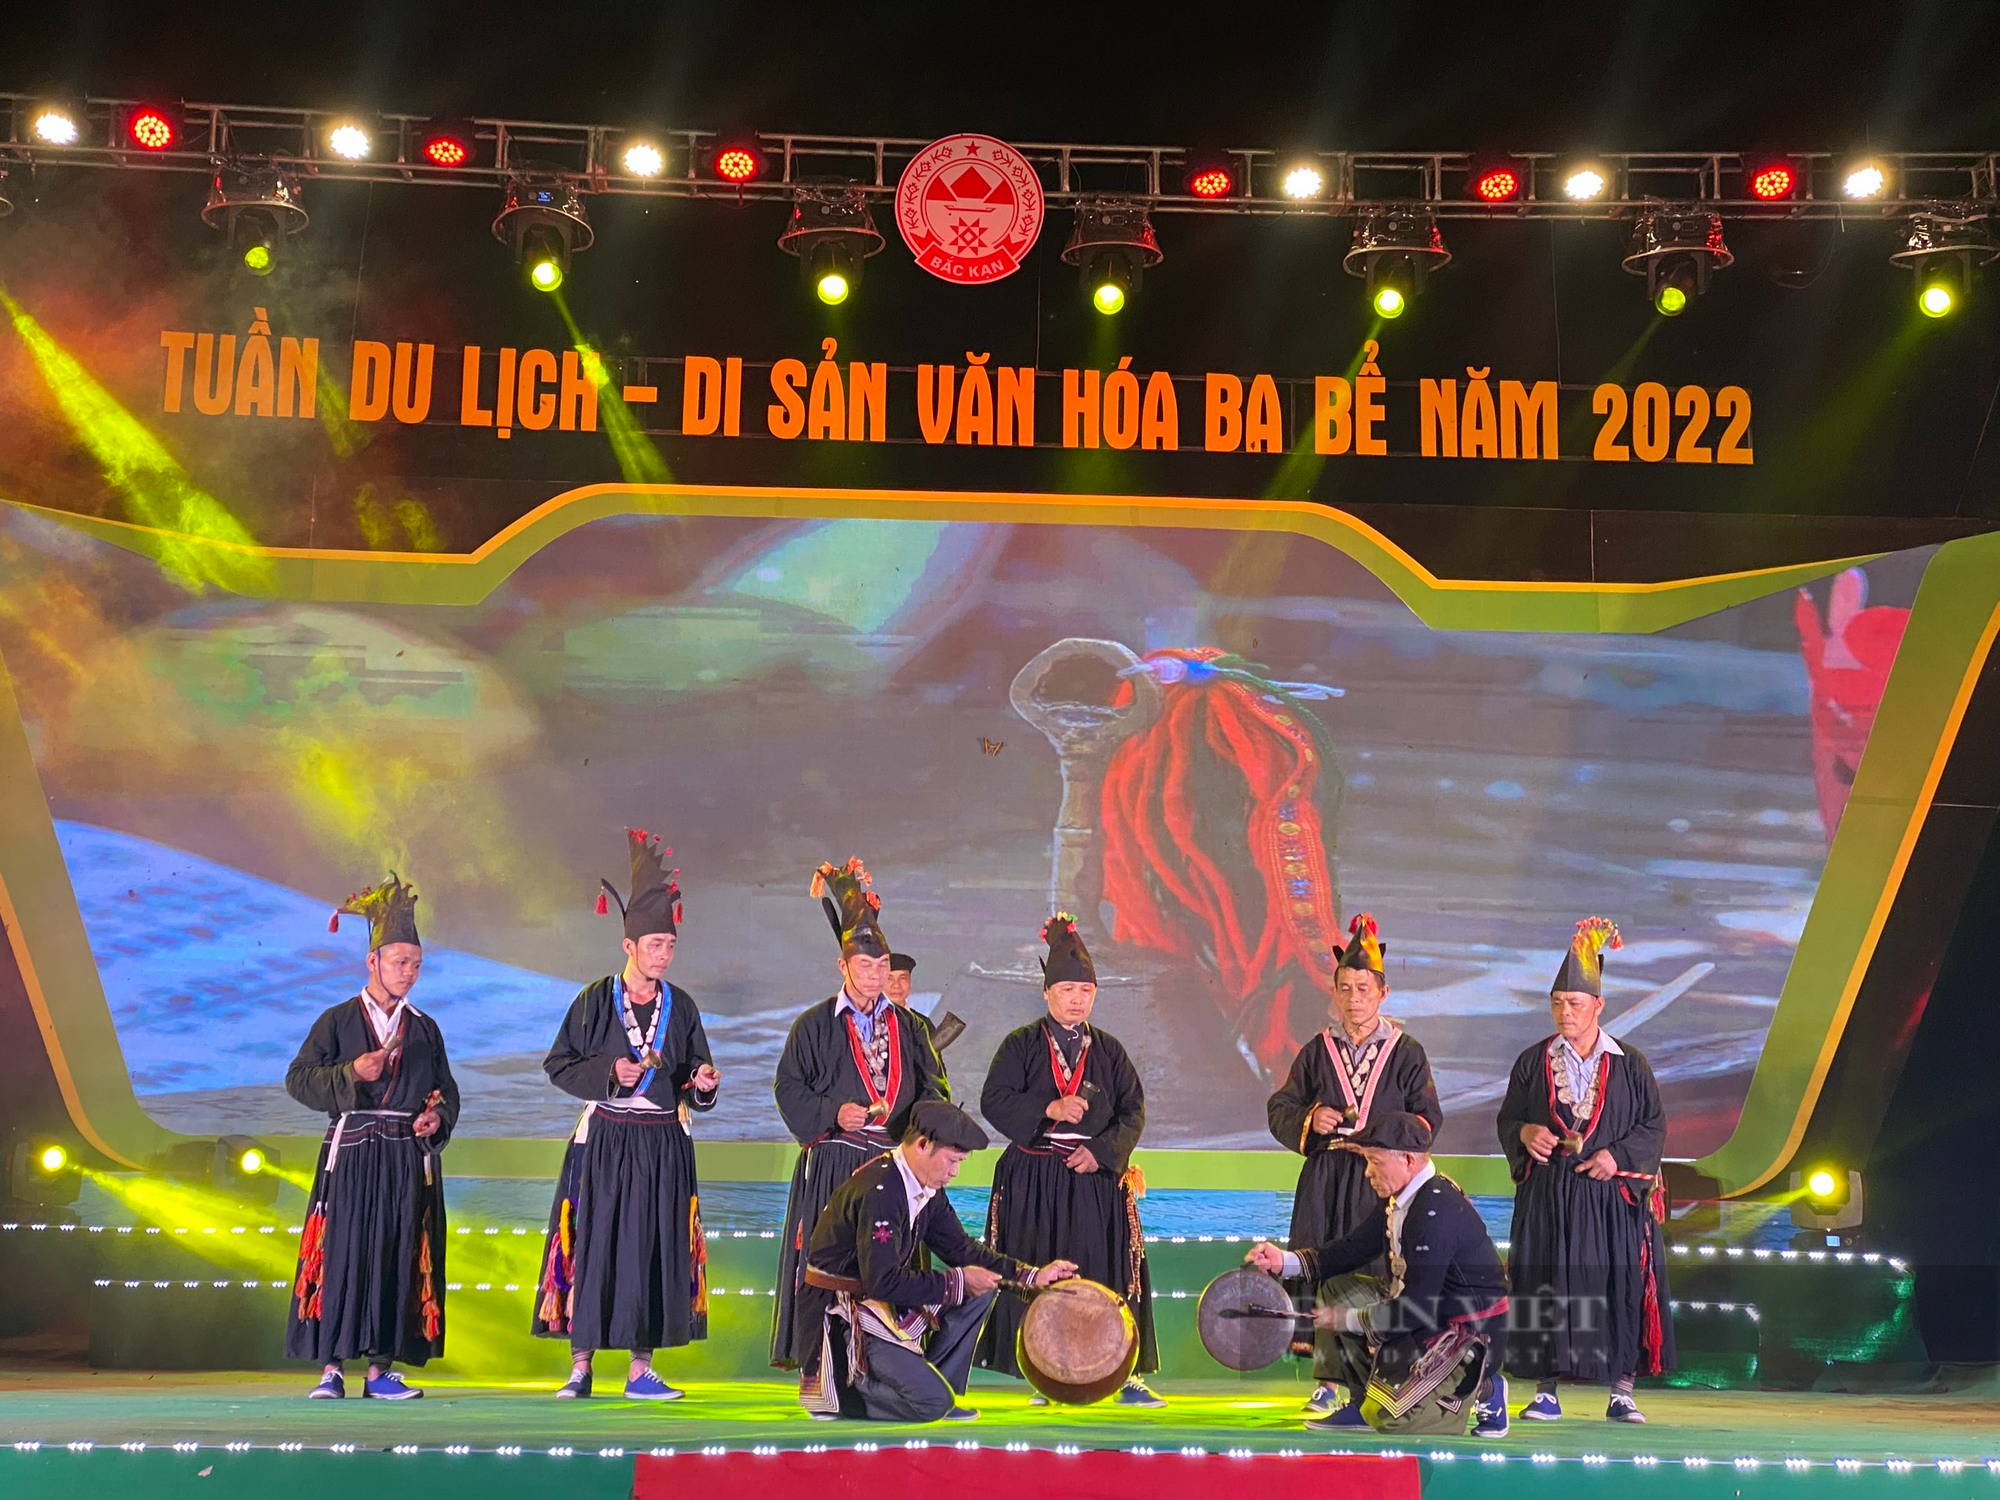 Tưng bừng Tuần lễ Du lịch – Di sản văn hóa Ba Bể năm 2022 - Ảnh 2.